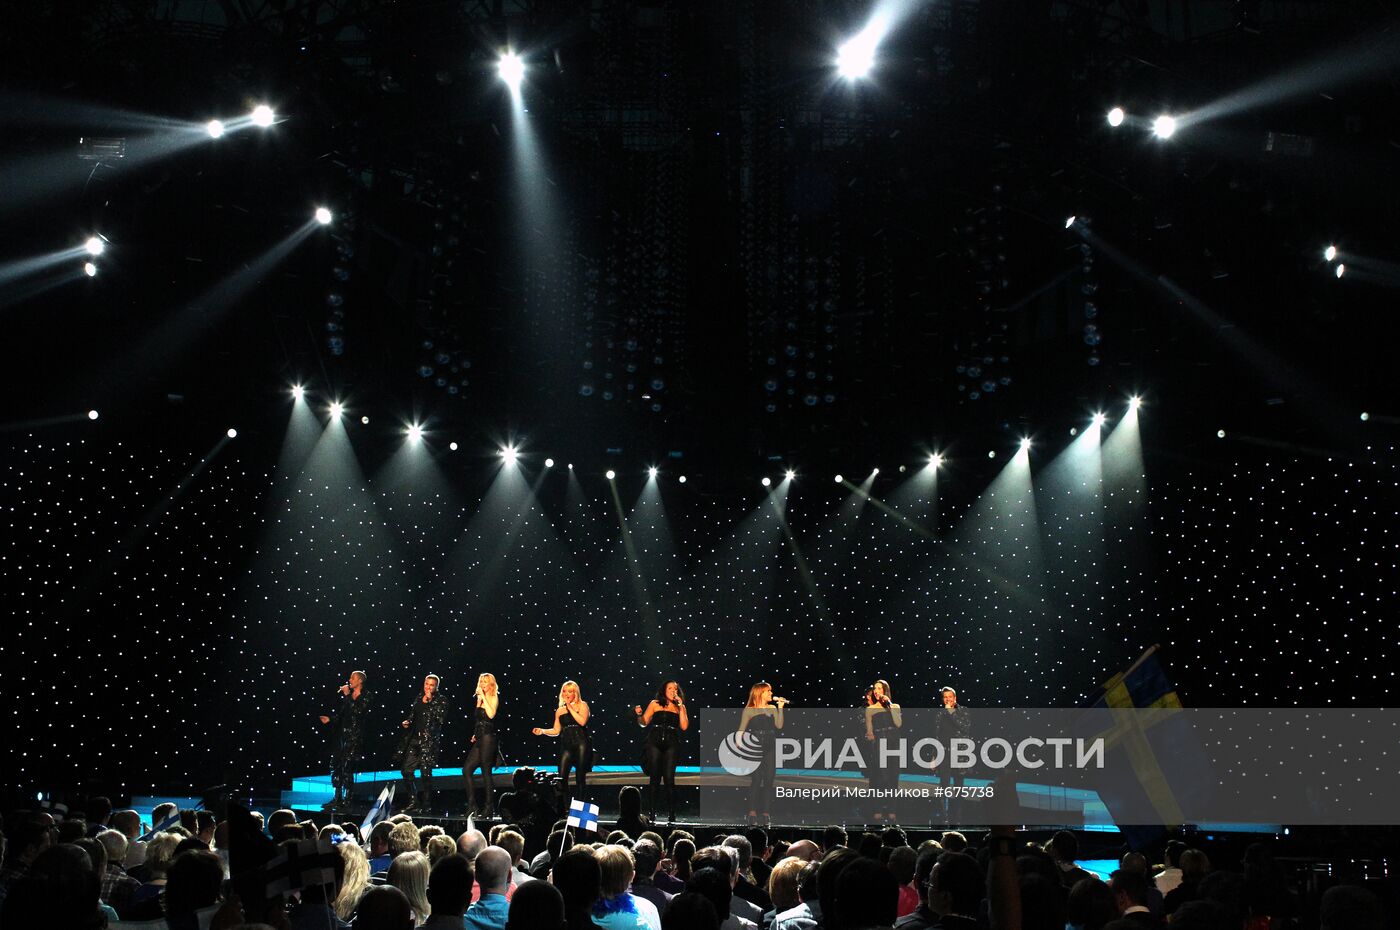 Открытие первого полуфинала конкурса "Евровидение-2010"